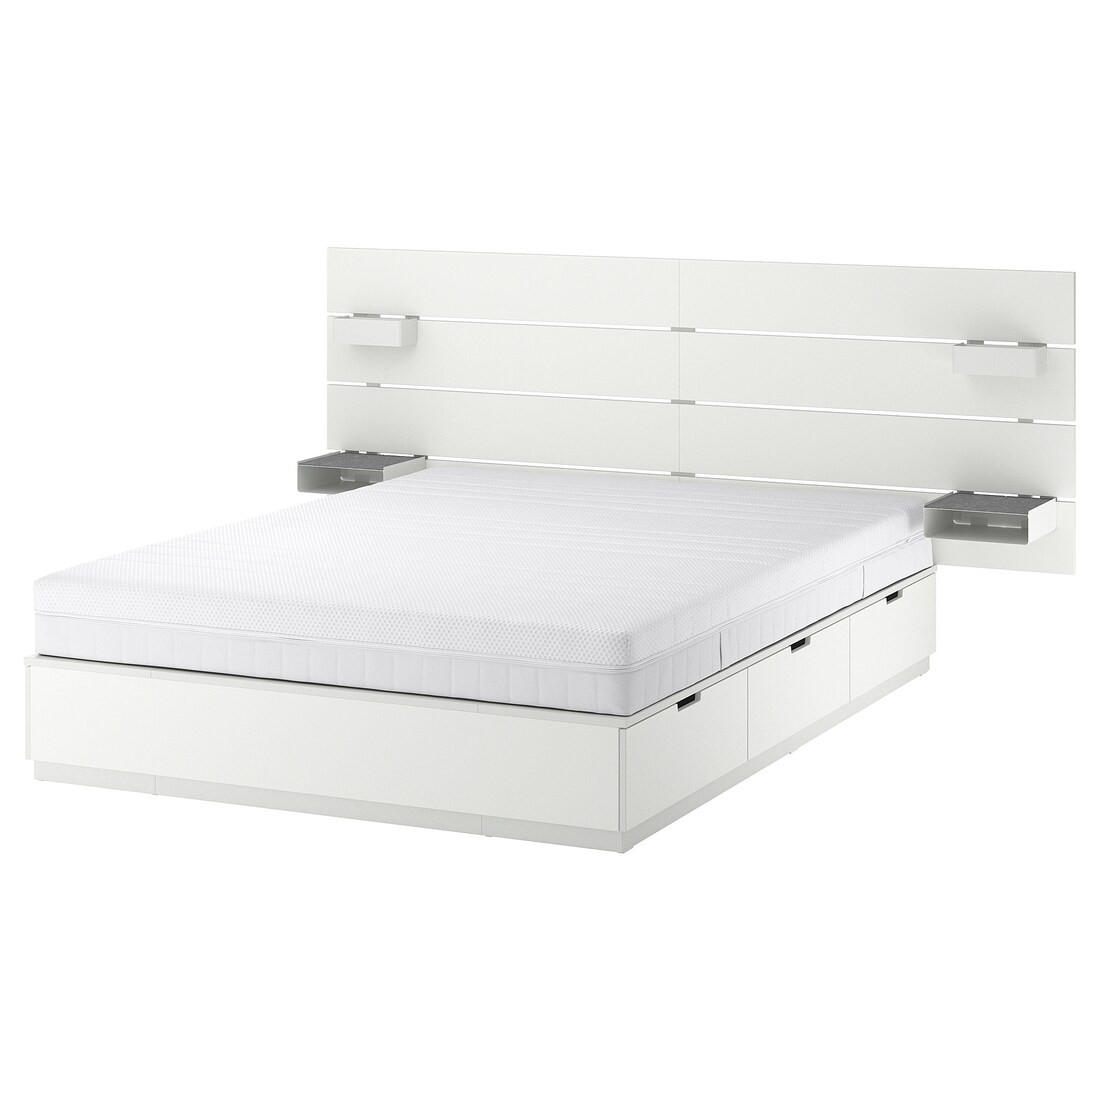 NORDLI Ліжко з контейнером і матрацом, з узголів'ям білий / Åkrehamn жорсткий, 160x200 см